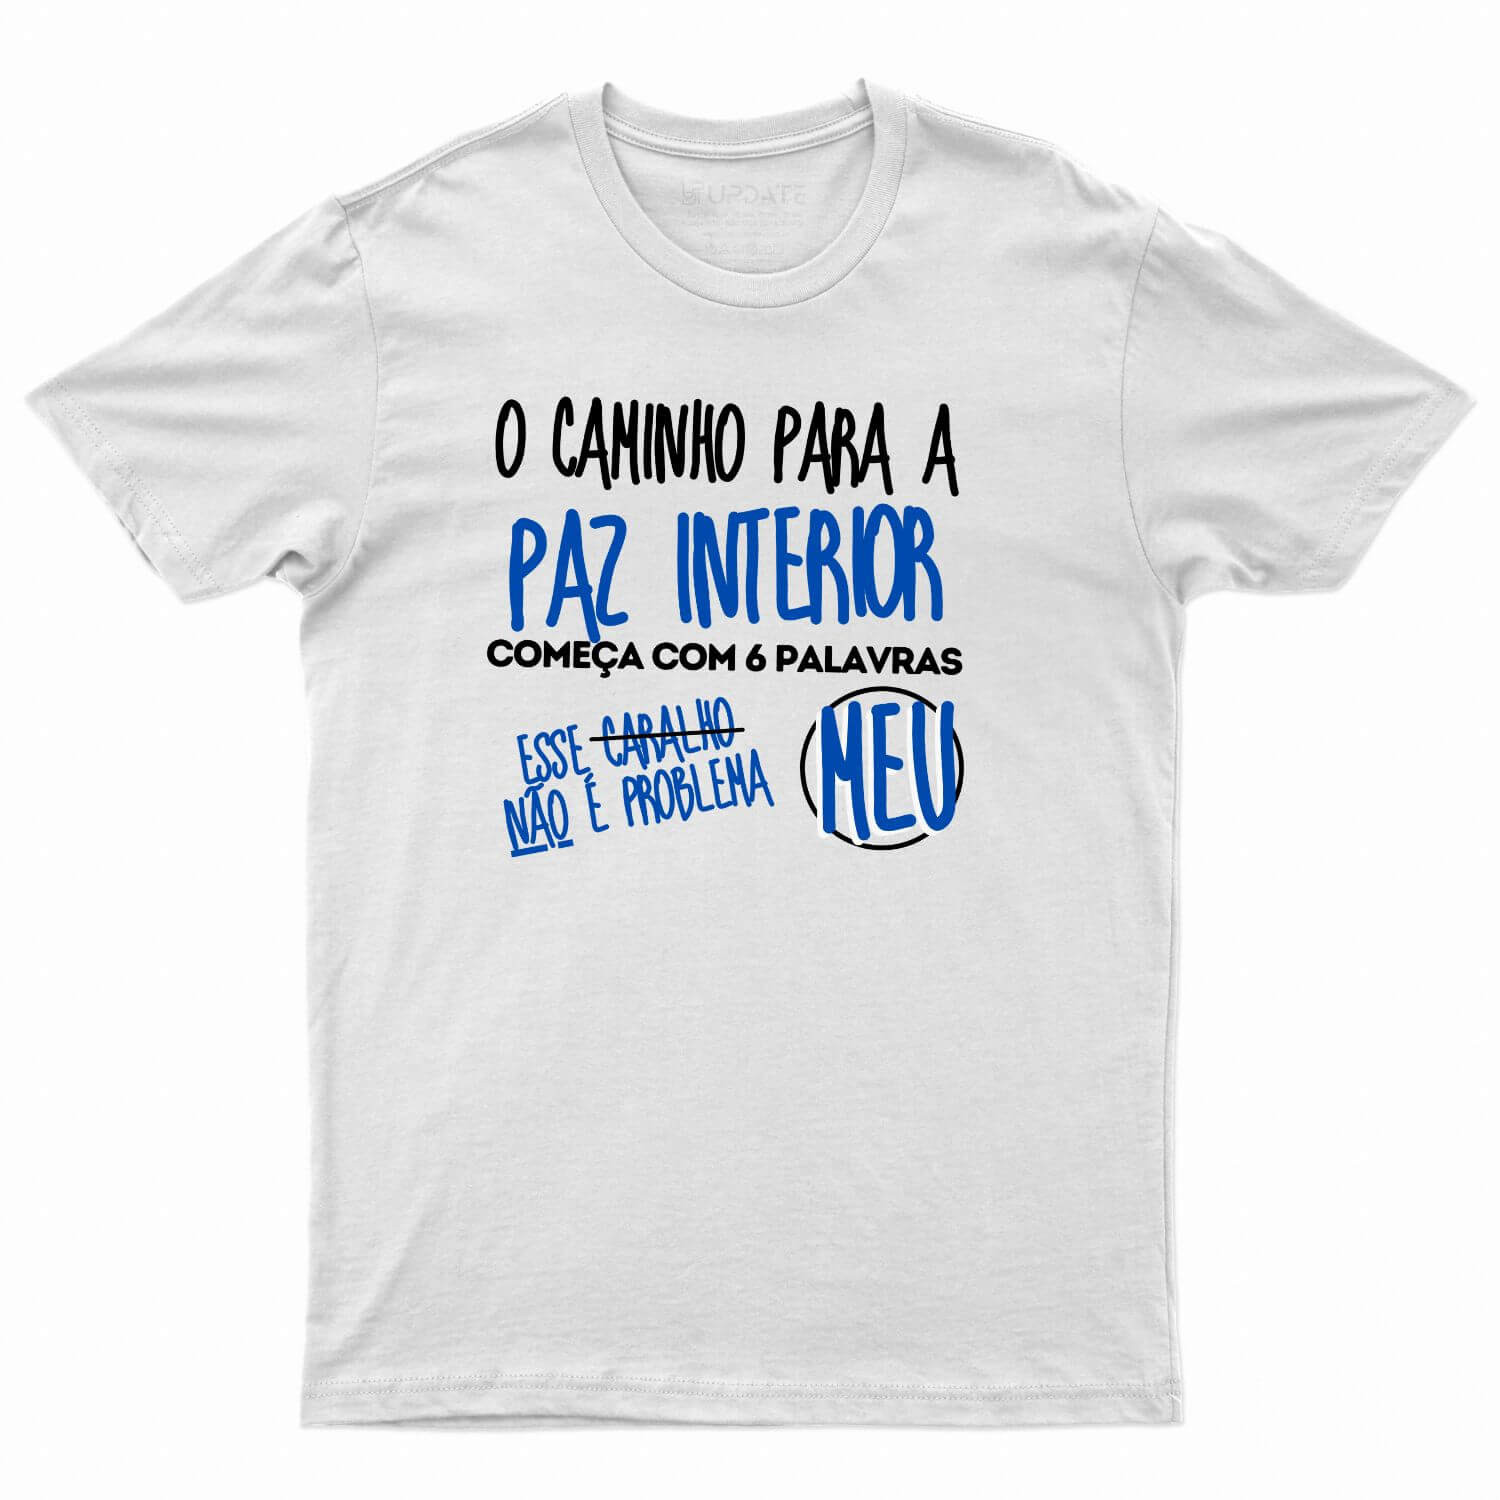 https://www.useupdate.com.br/media/product/9cc/camiseta-o-caminho-para-a-paz-interior-1f9.jpg